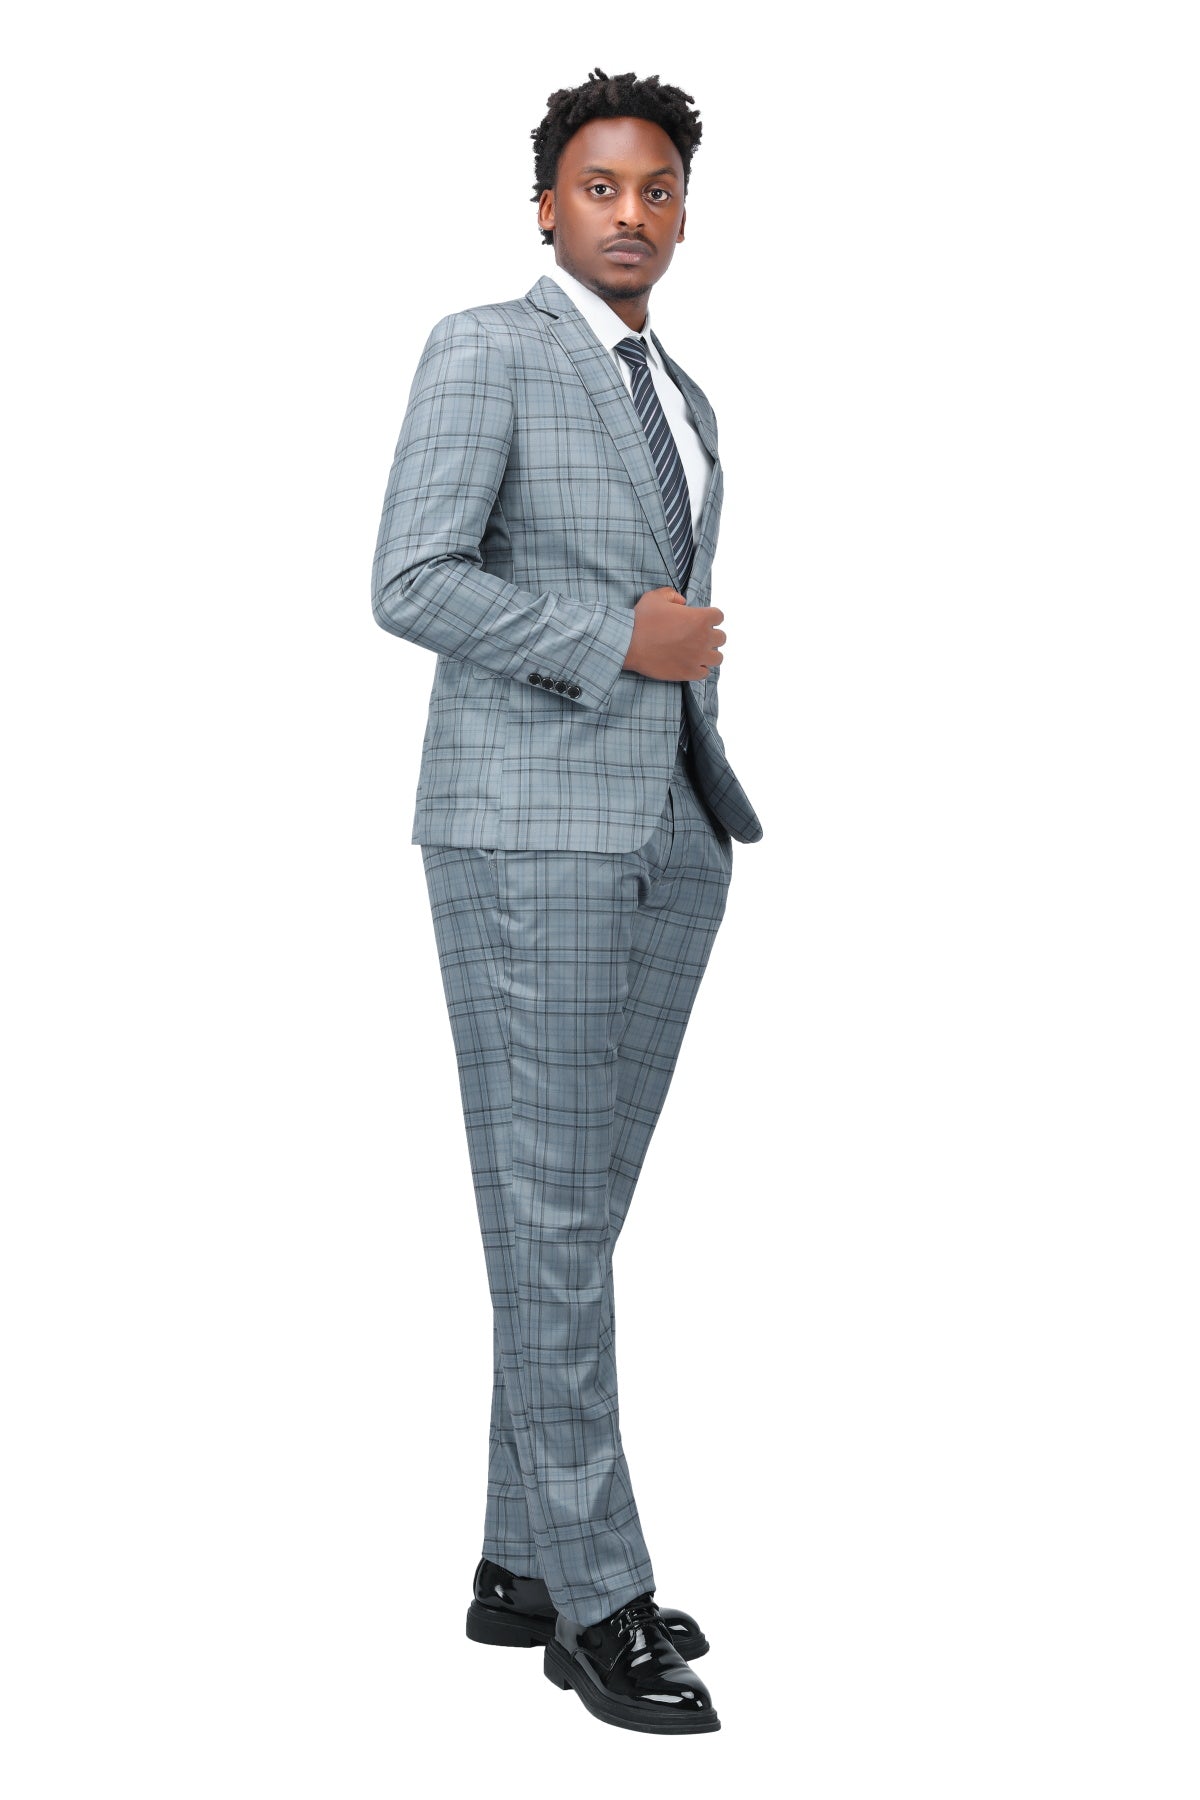 Plaid Stripe Suit Slim Fit 2-Piece Casual Suit Grey